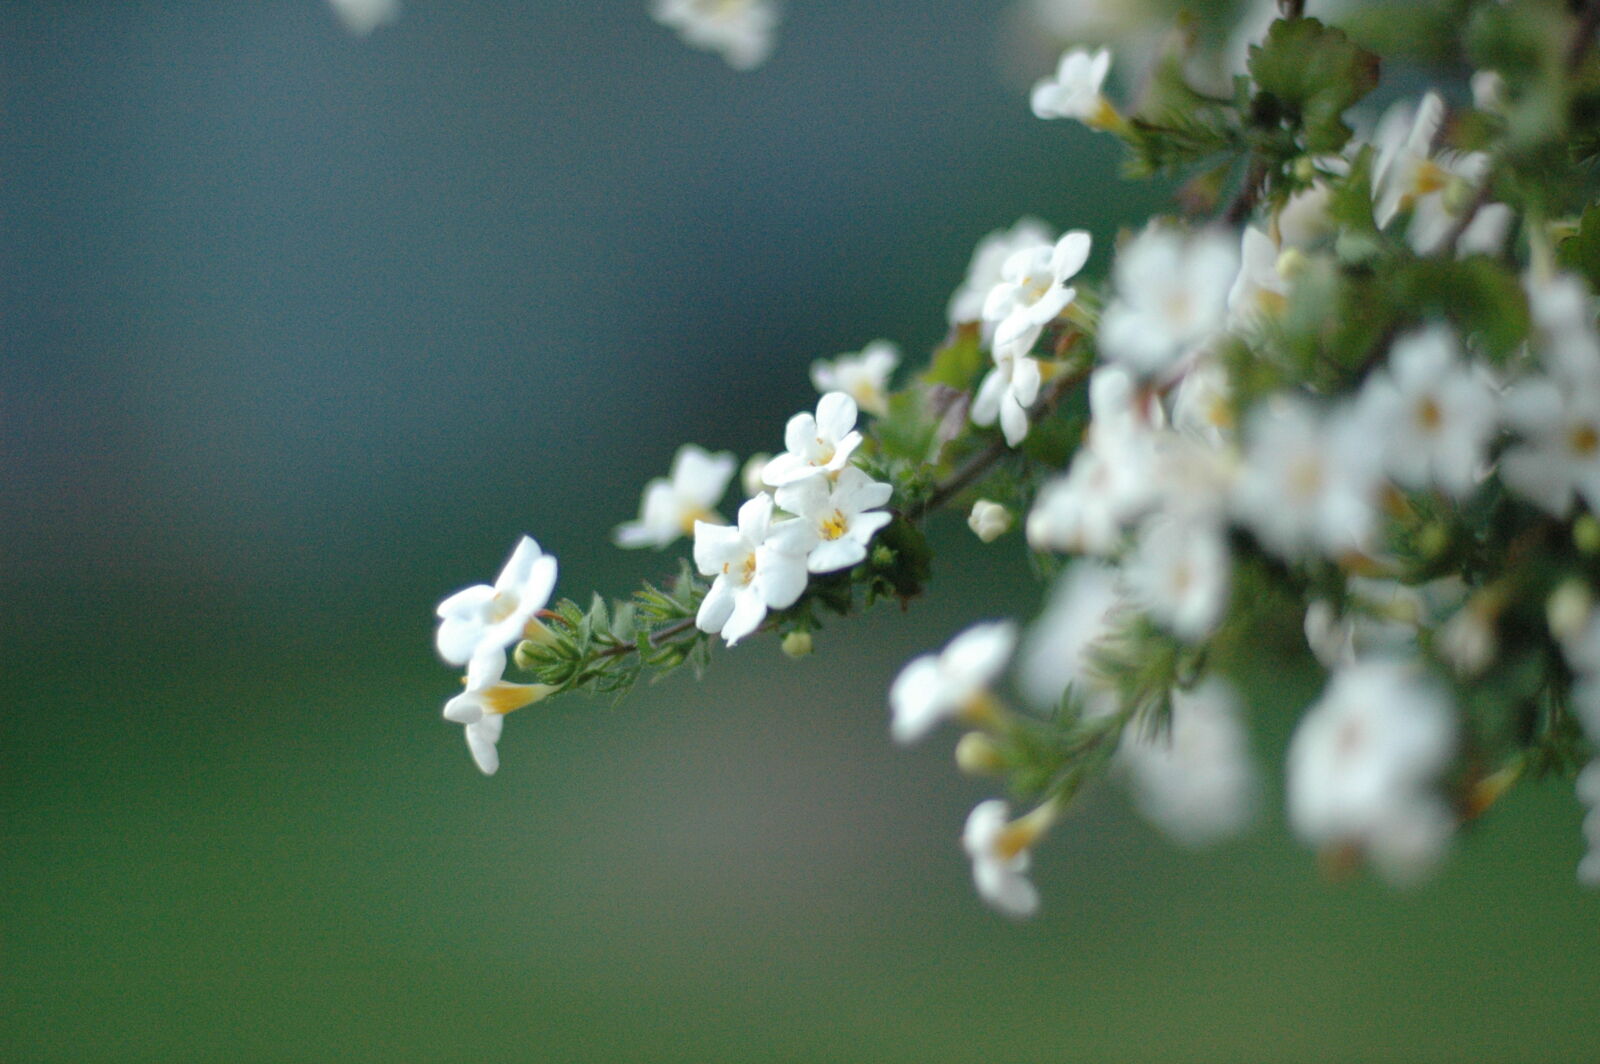 Nikon AF Nikkor 50mm F1.4D sample photo. Flower, white photography